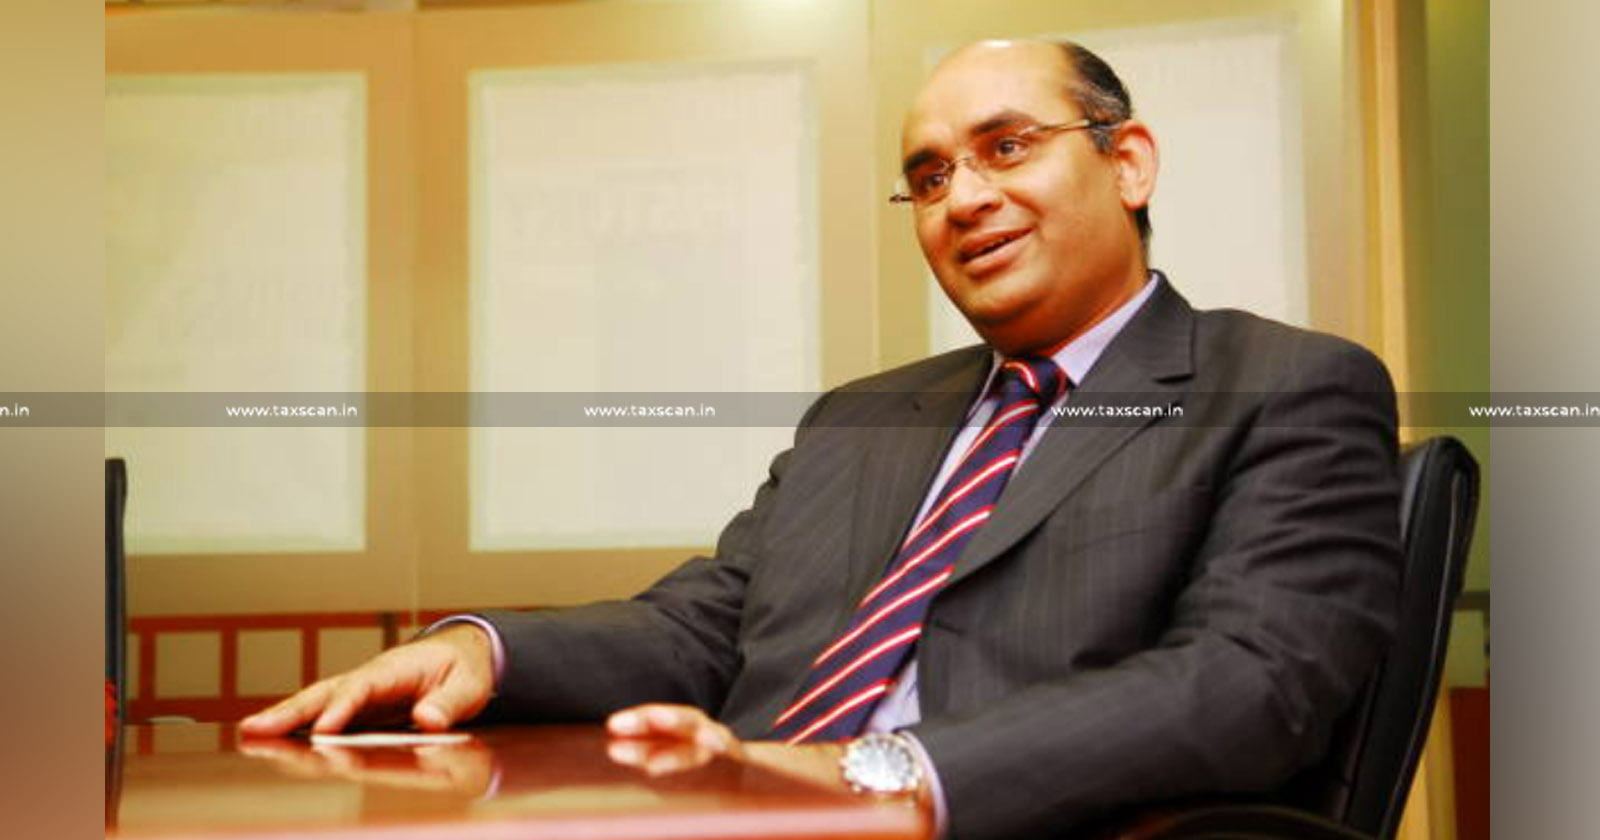 PMLA - Devas CEO Ramachandran Vishwanathan declared as Fugitive Economic Offender - Devas CEO Ramachandran Vishwanathan - Devas CEO - Ramachandran Vishwanathan - Fugitive Economic Offender - Taxscan